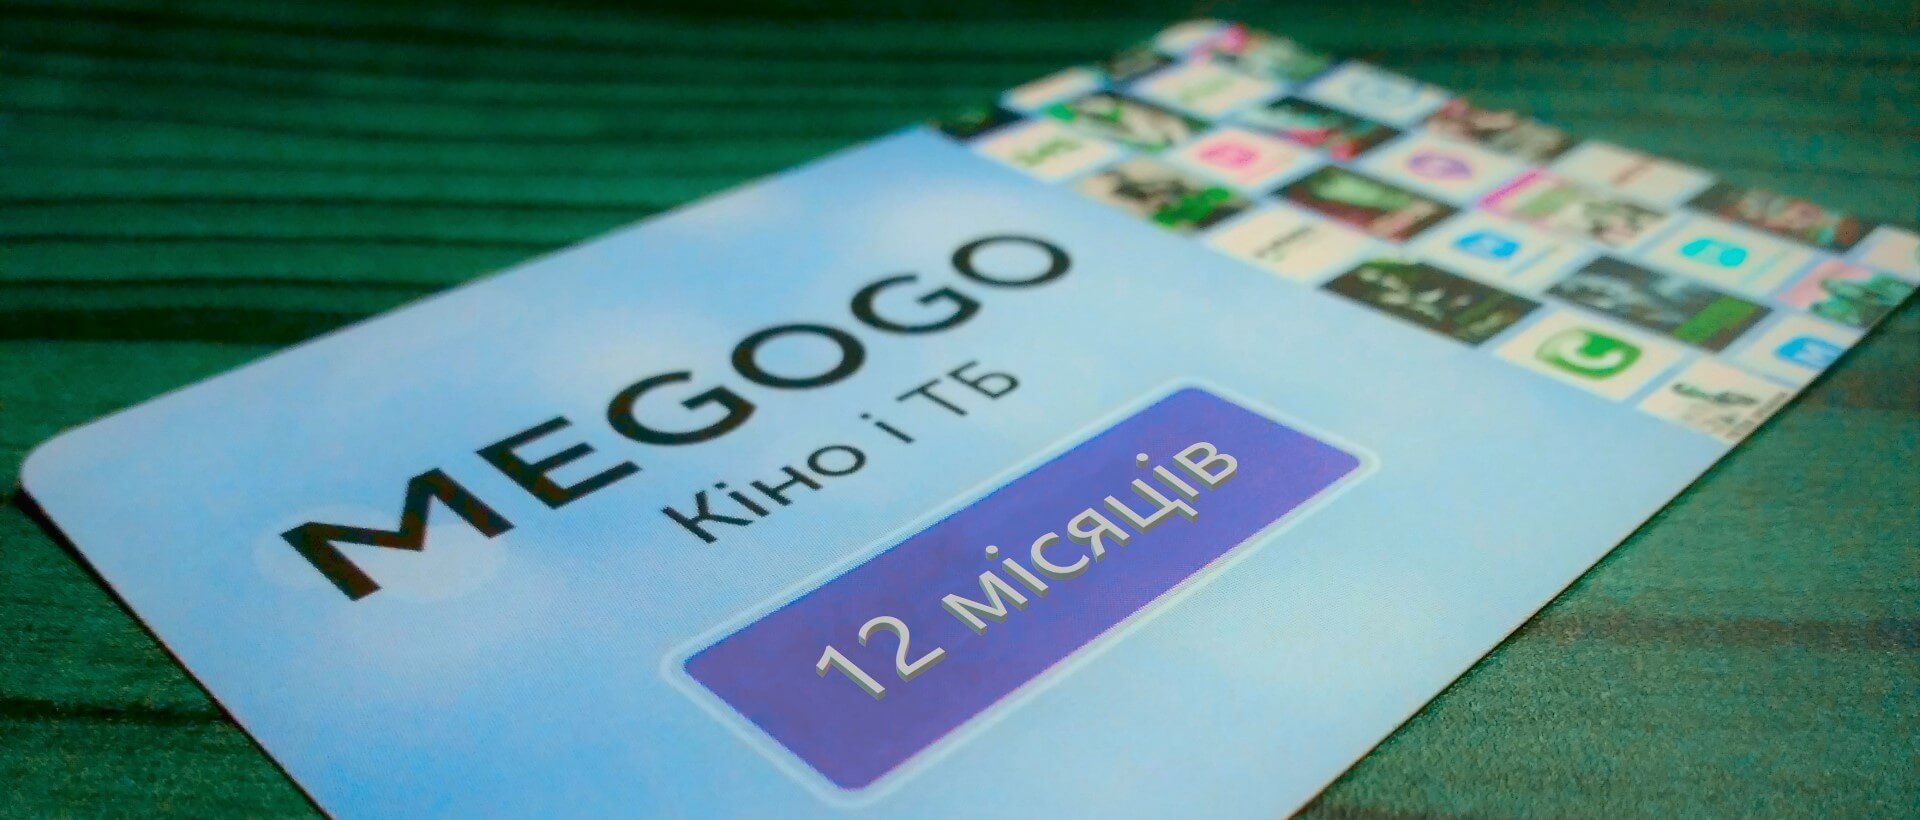 Подписка на пакет Megogo Кино и ТВ на 12 месяцев "Легкая", Киев - Фото